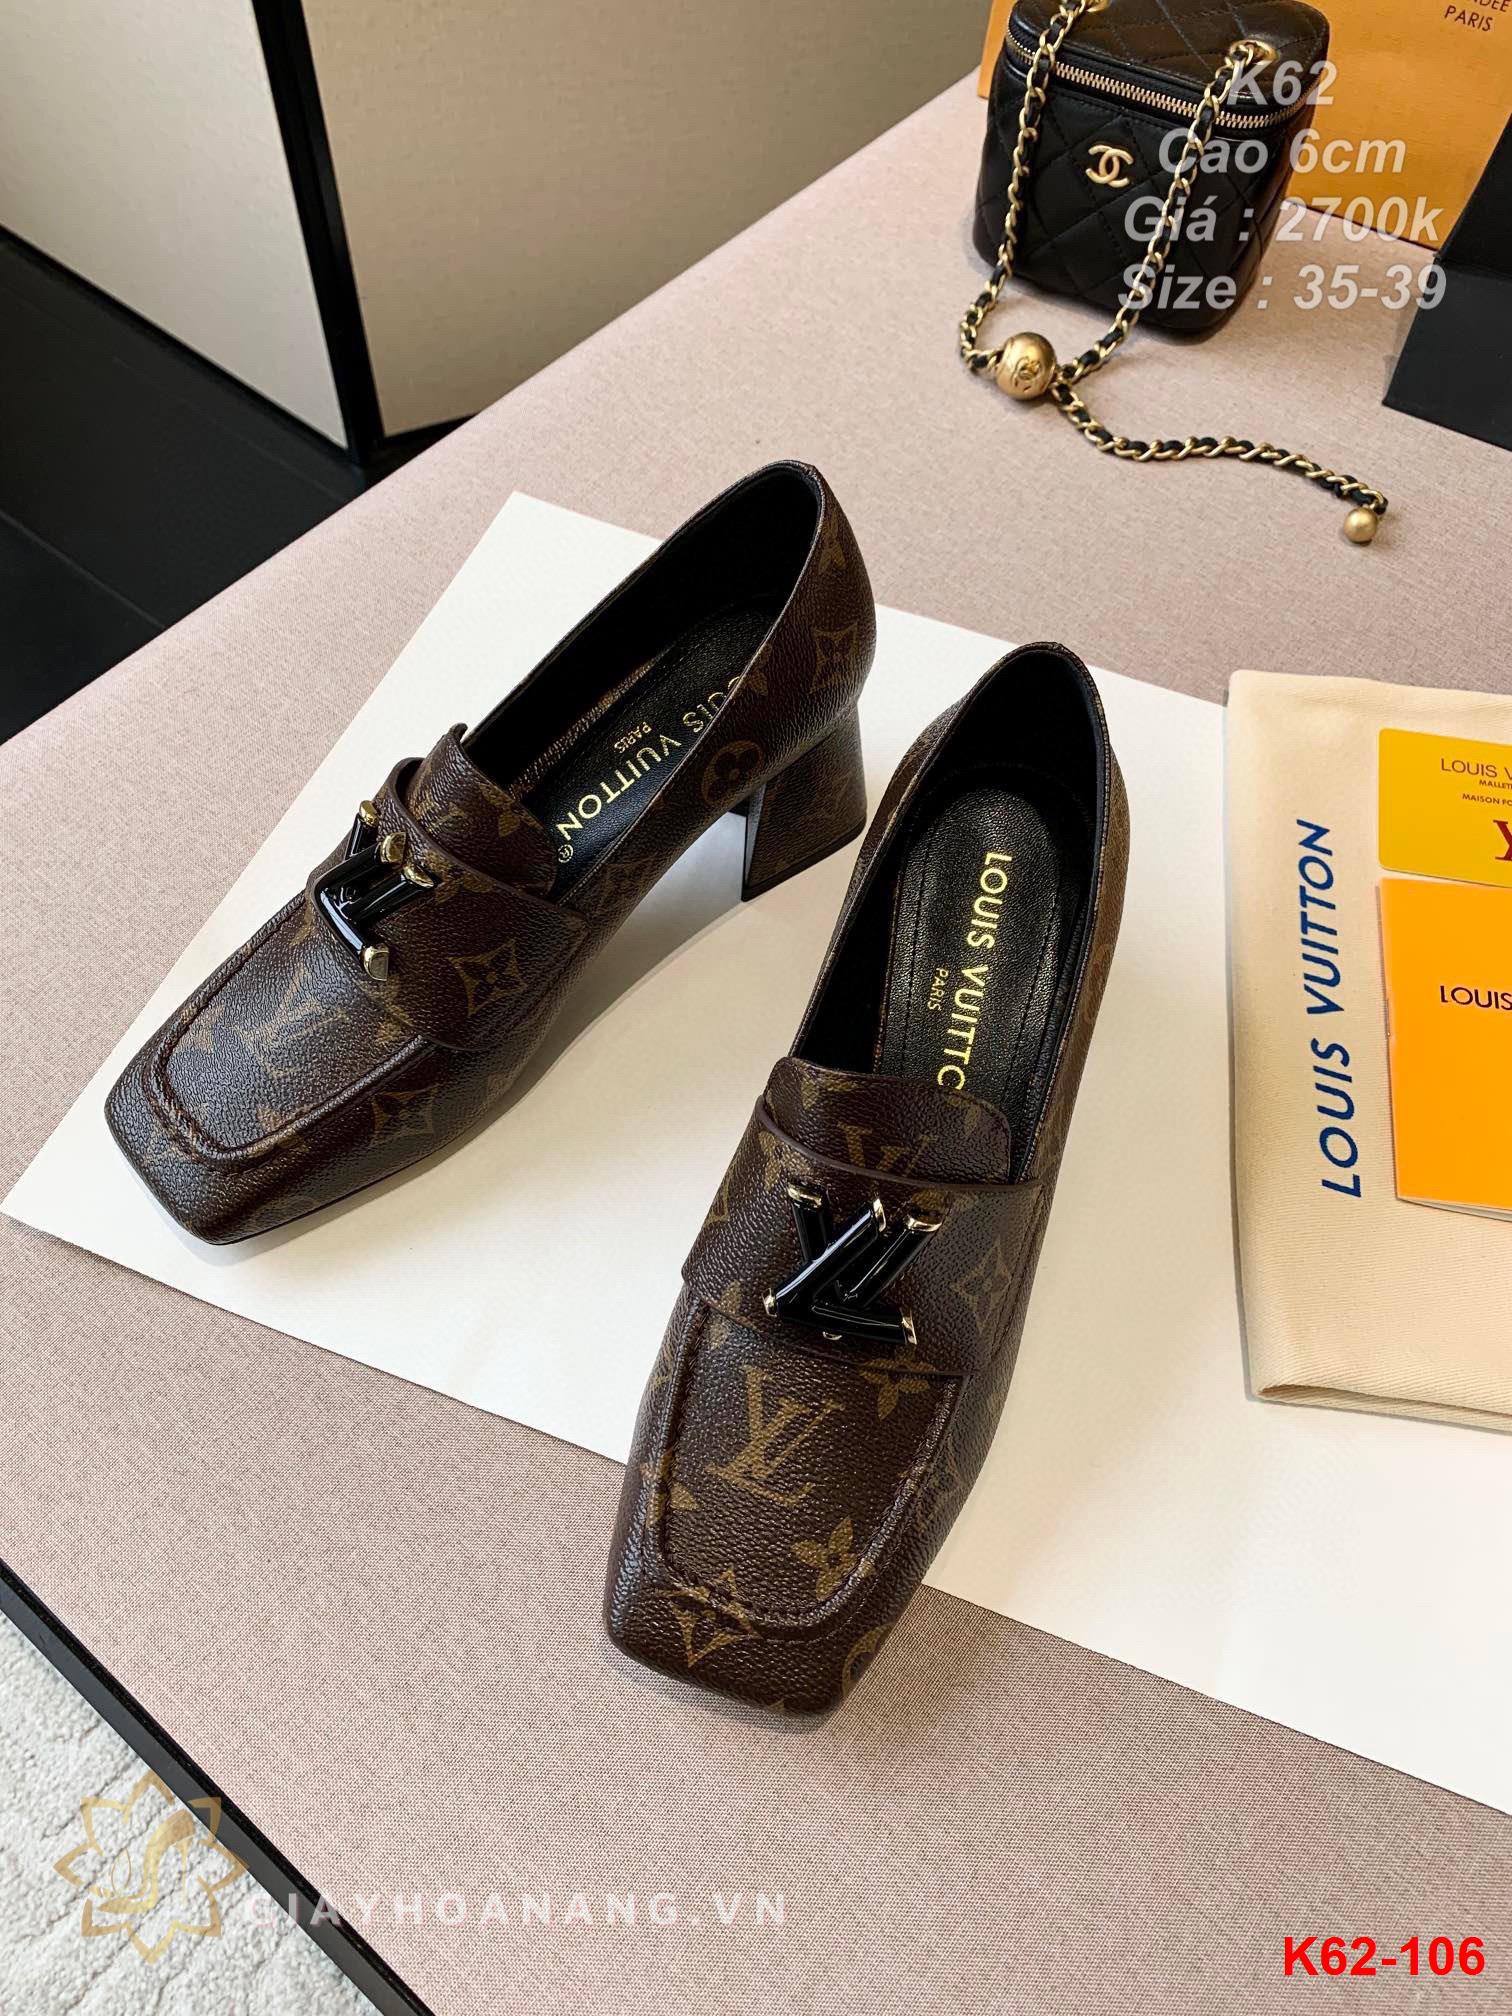 K62-106 Louis Vuitton giày cao 6cm siêu cấp